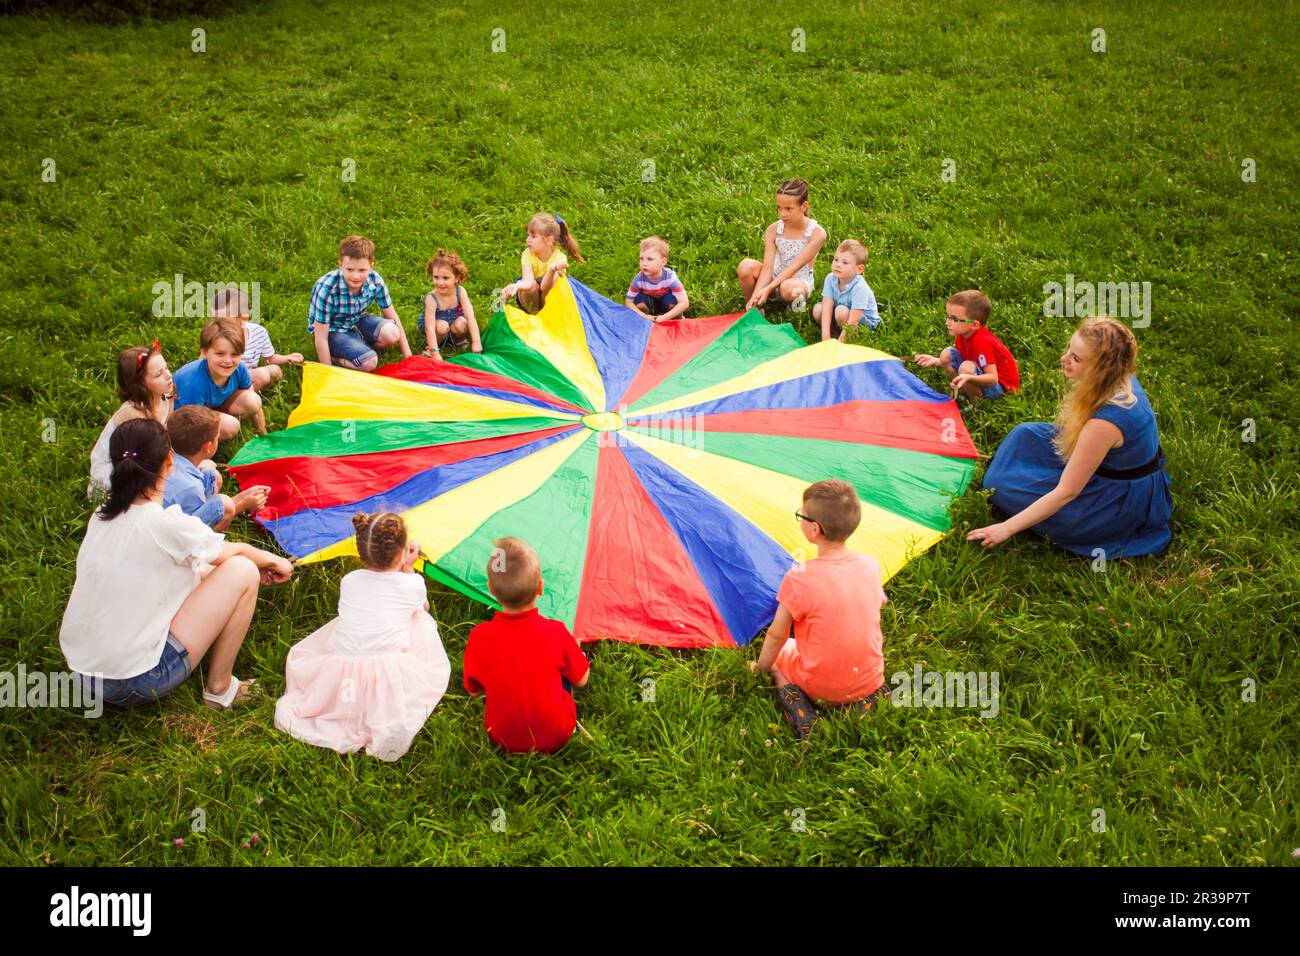 Grand groupe d'enfants jouant au jeu de parachute Banque D'Images